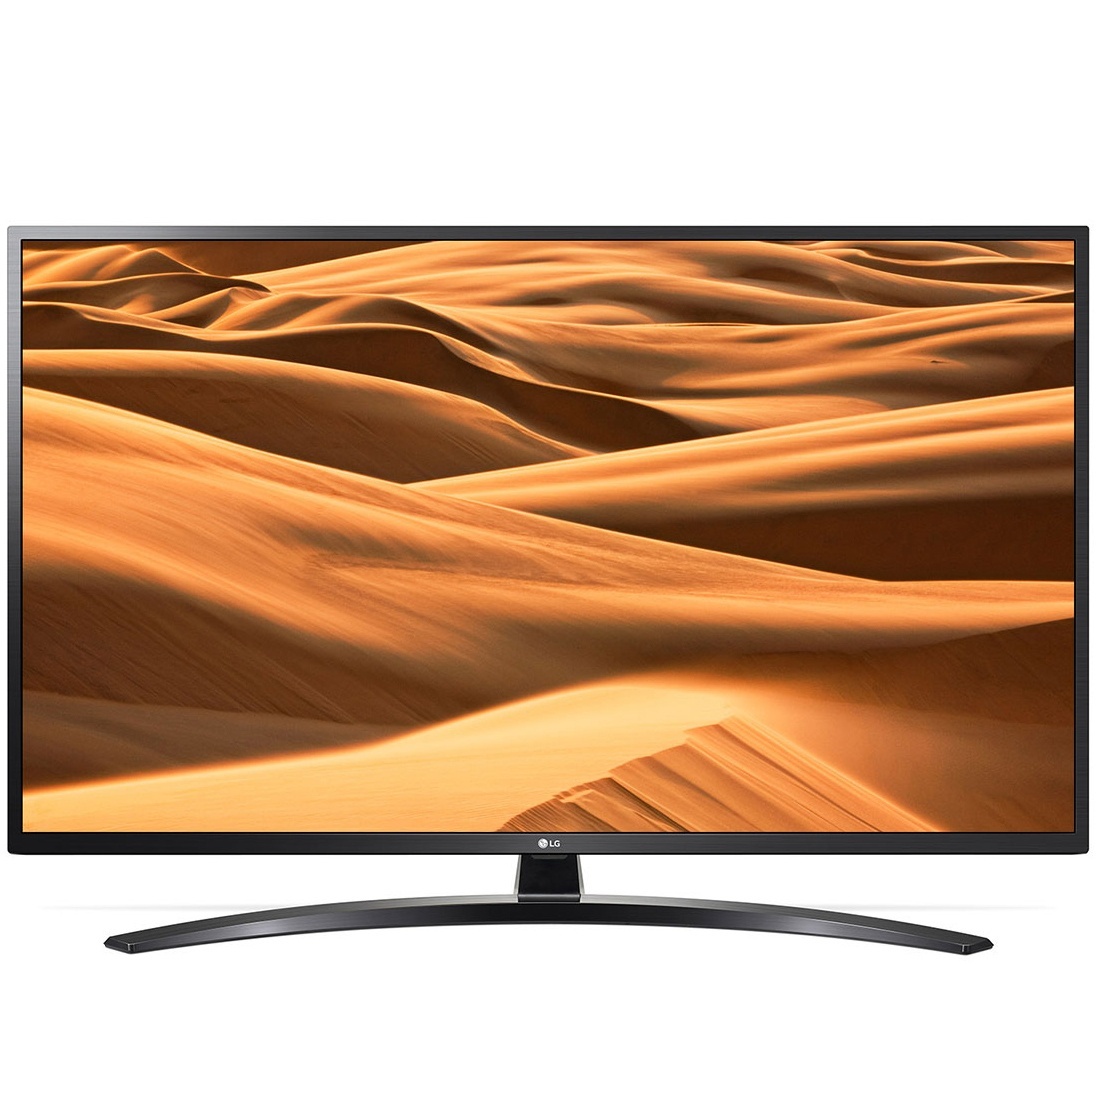 LG UHD TV 49 inch 4K Smart UHD TV HDR 49UM7400PTA chính hãng